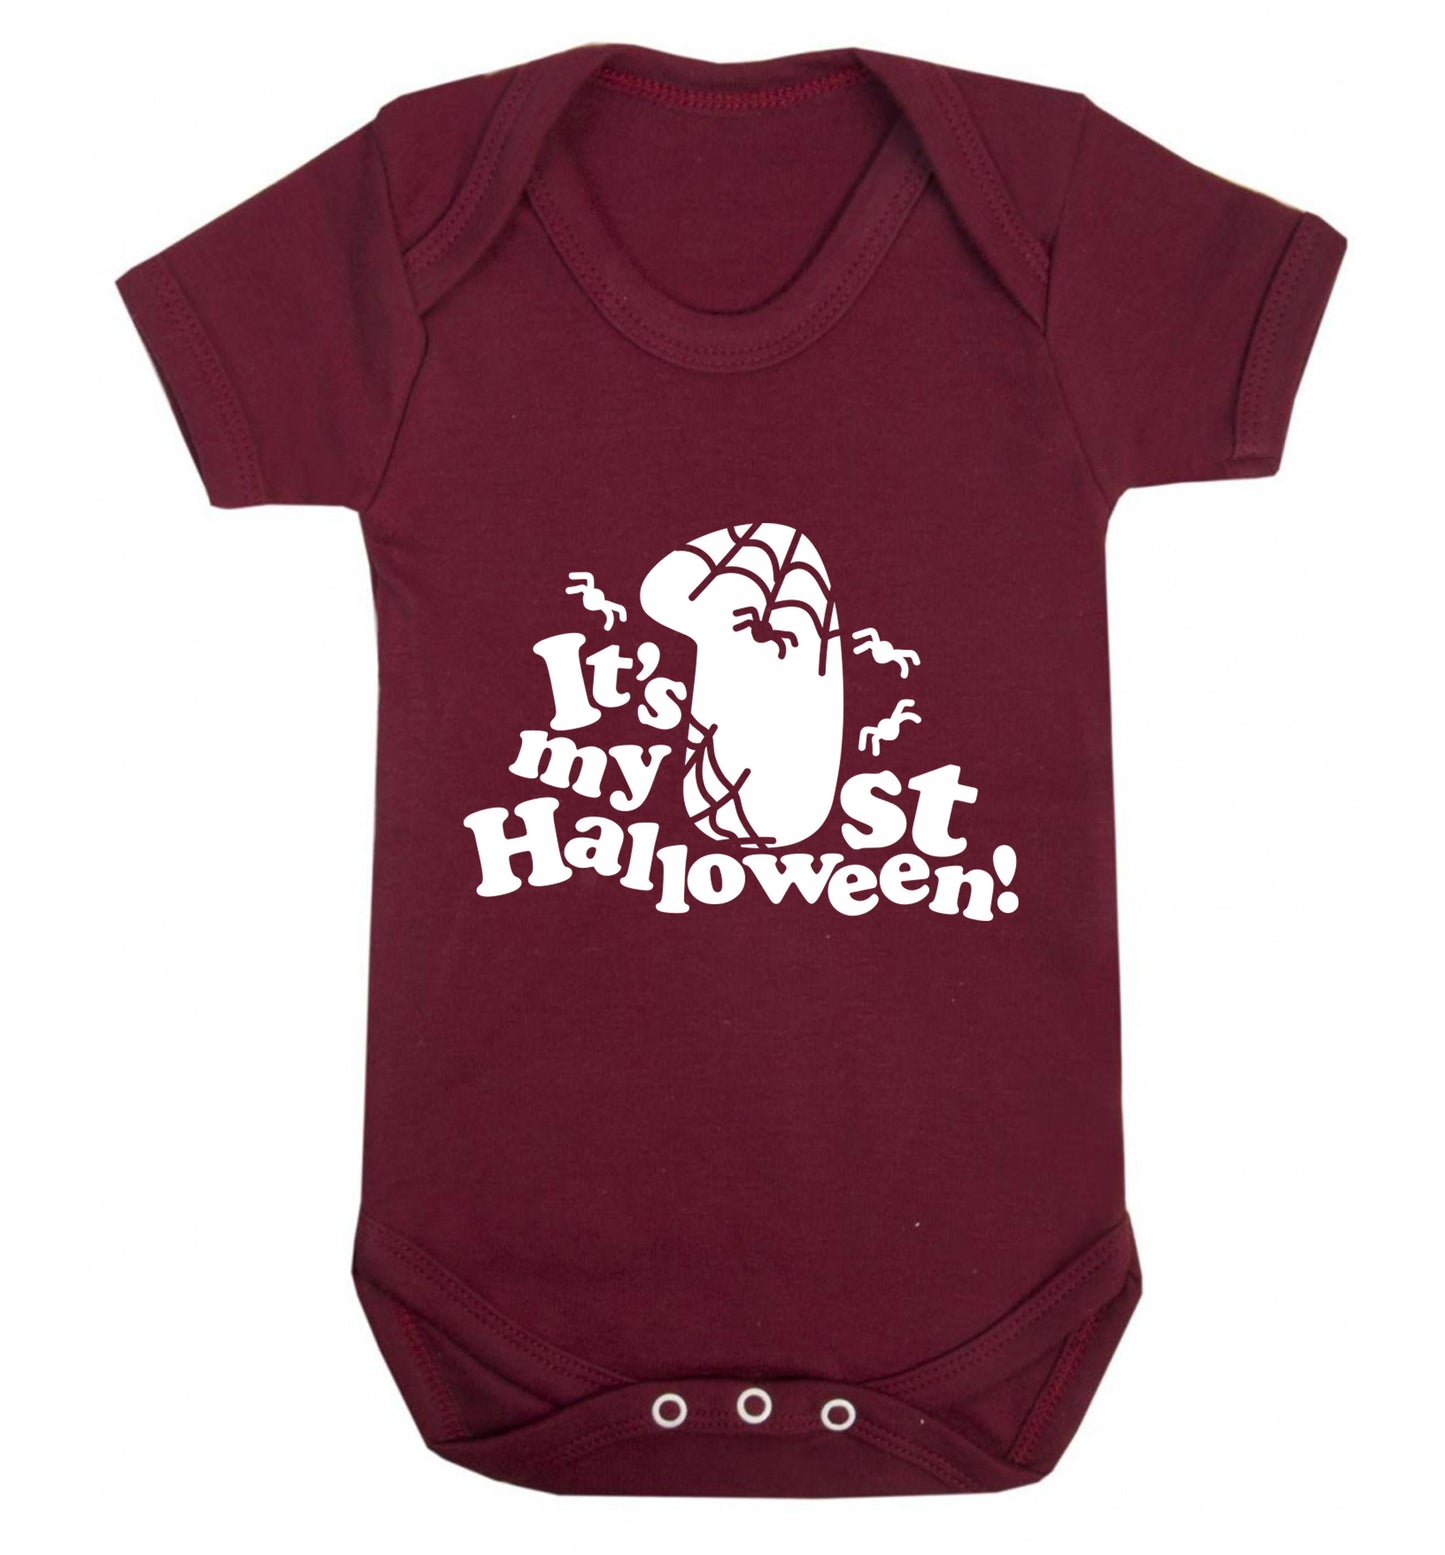 1st Halloween Baby Vest maroon 18-24 months